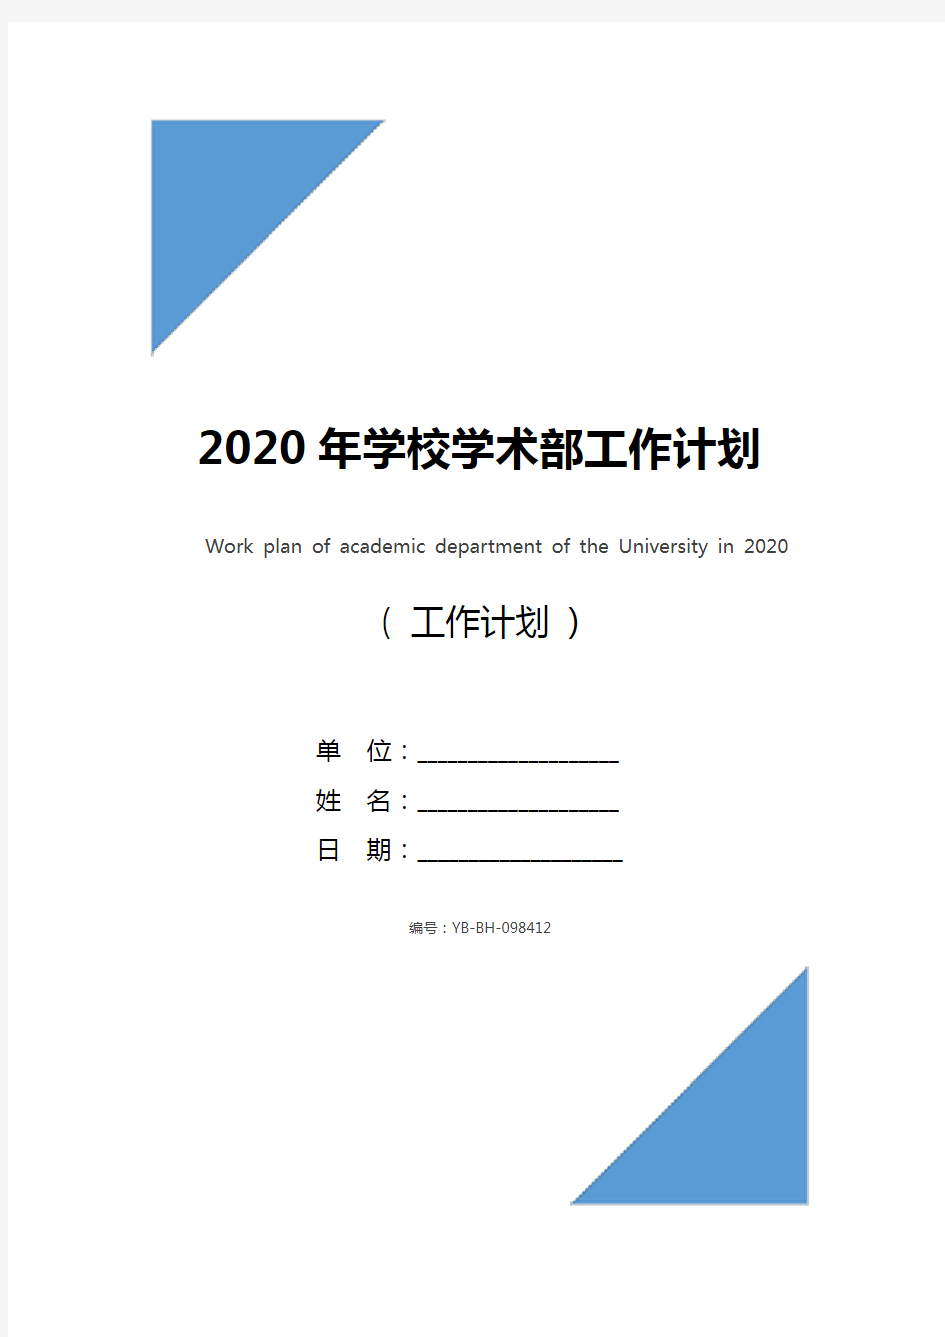 2020年学校学术部工作计划